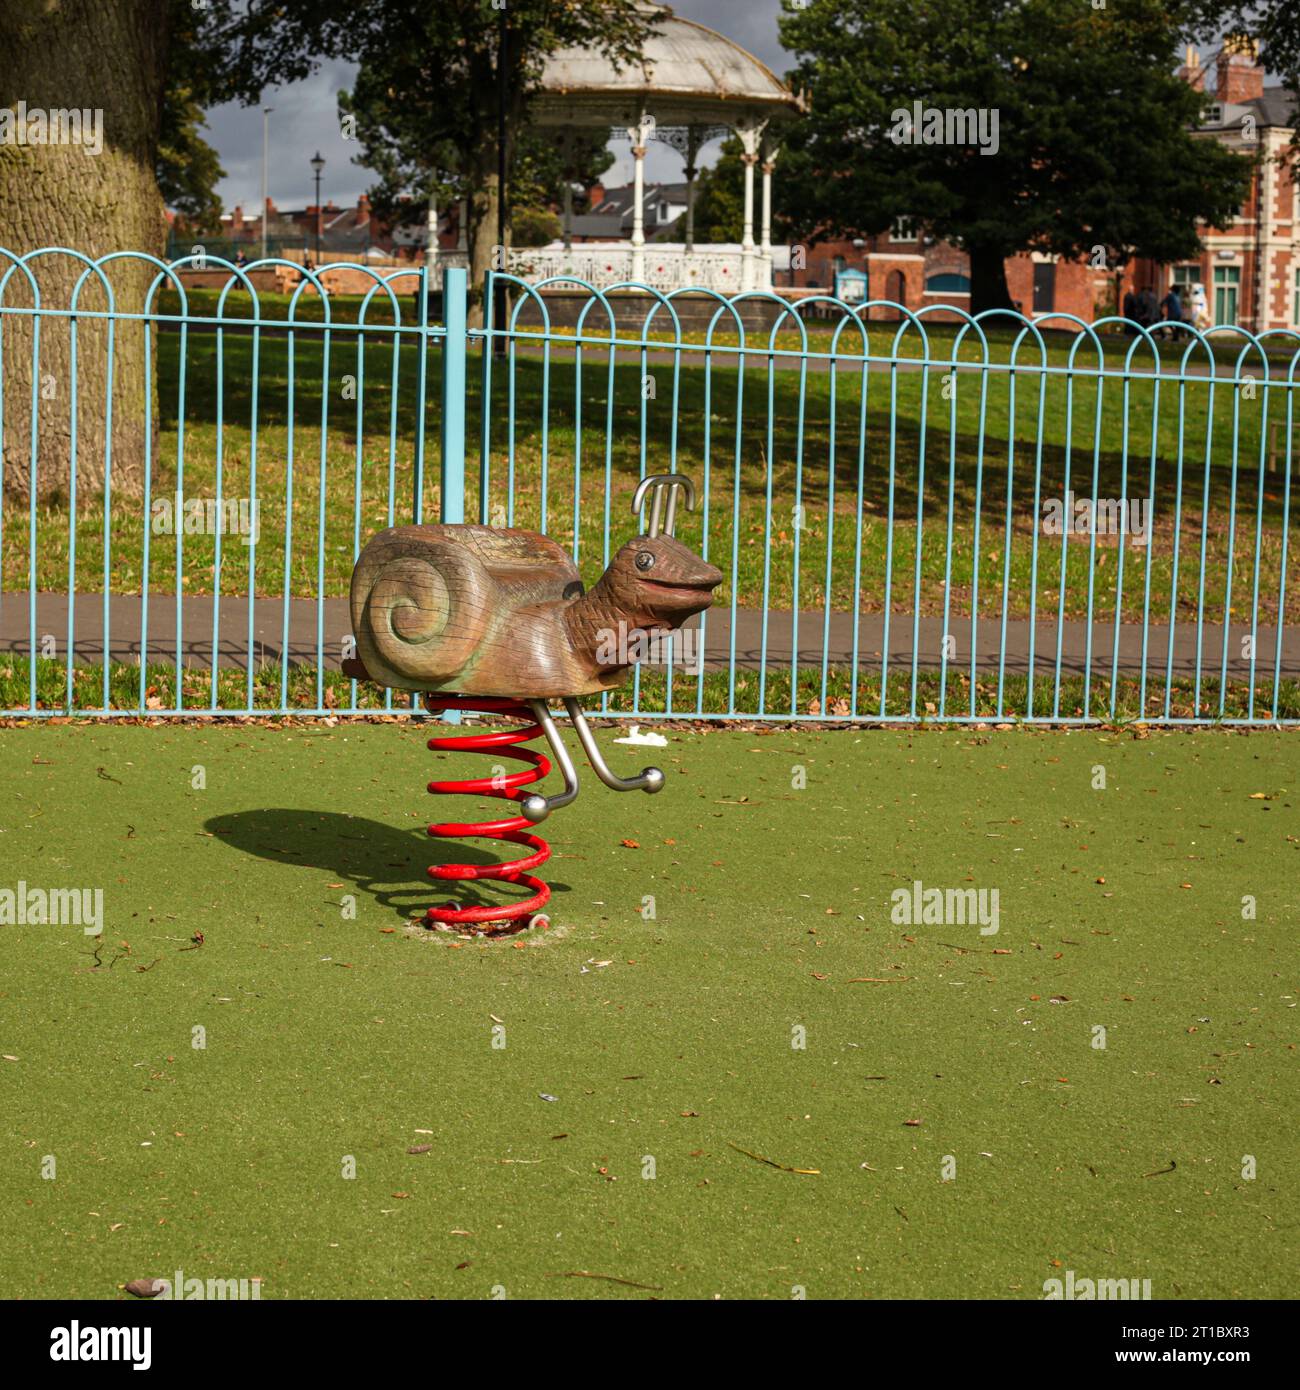 Ein schneckenförmiger Federreiter, der in einem öffentlichen Park installiert ist Stockfoto